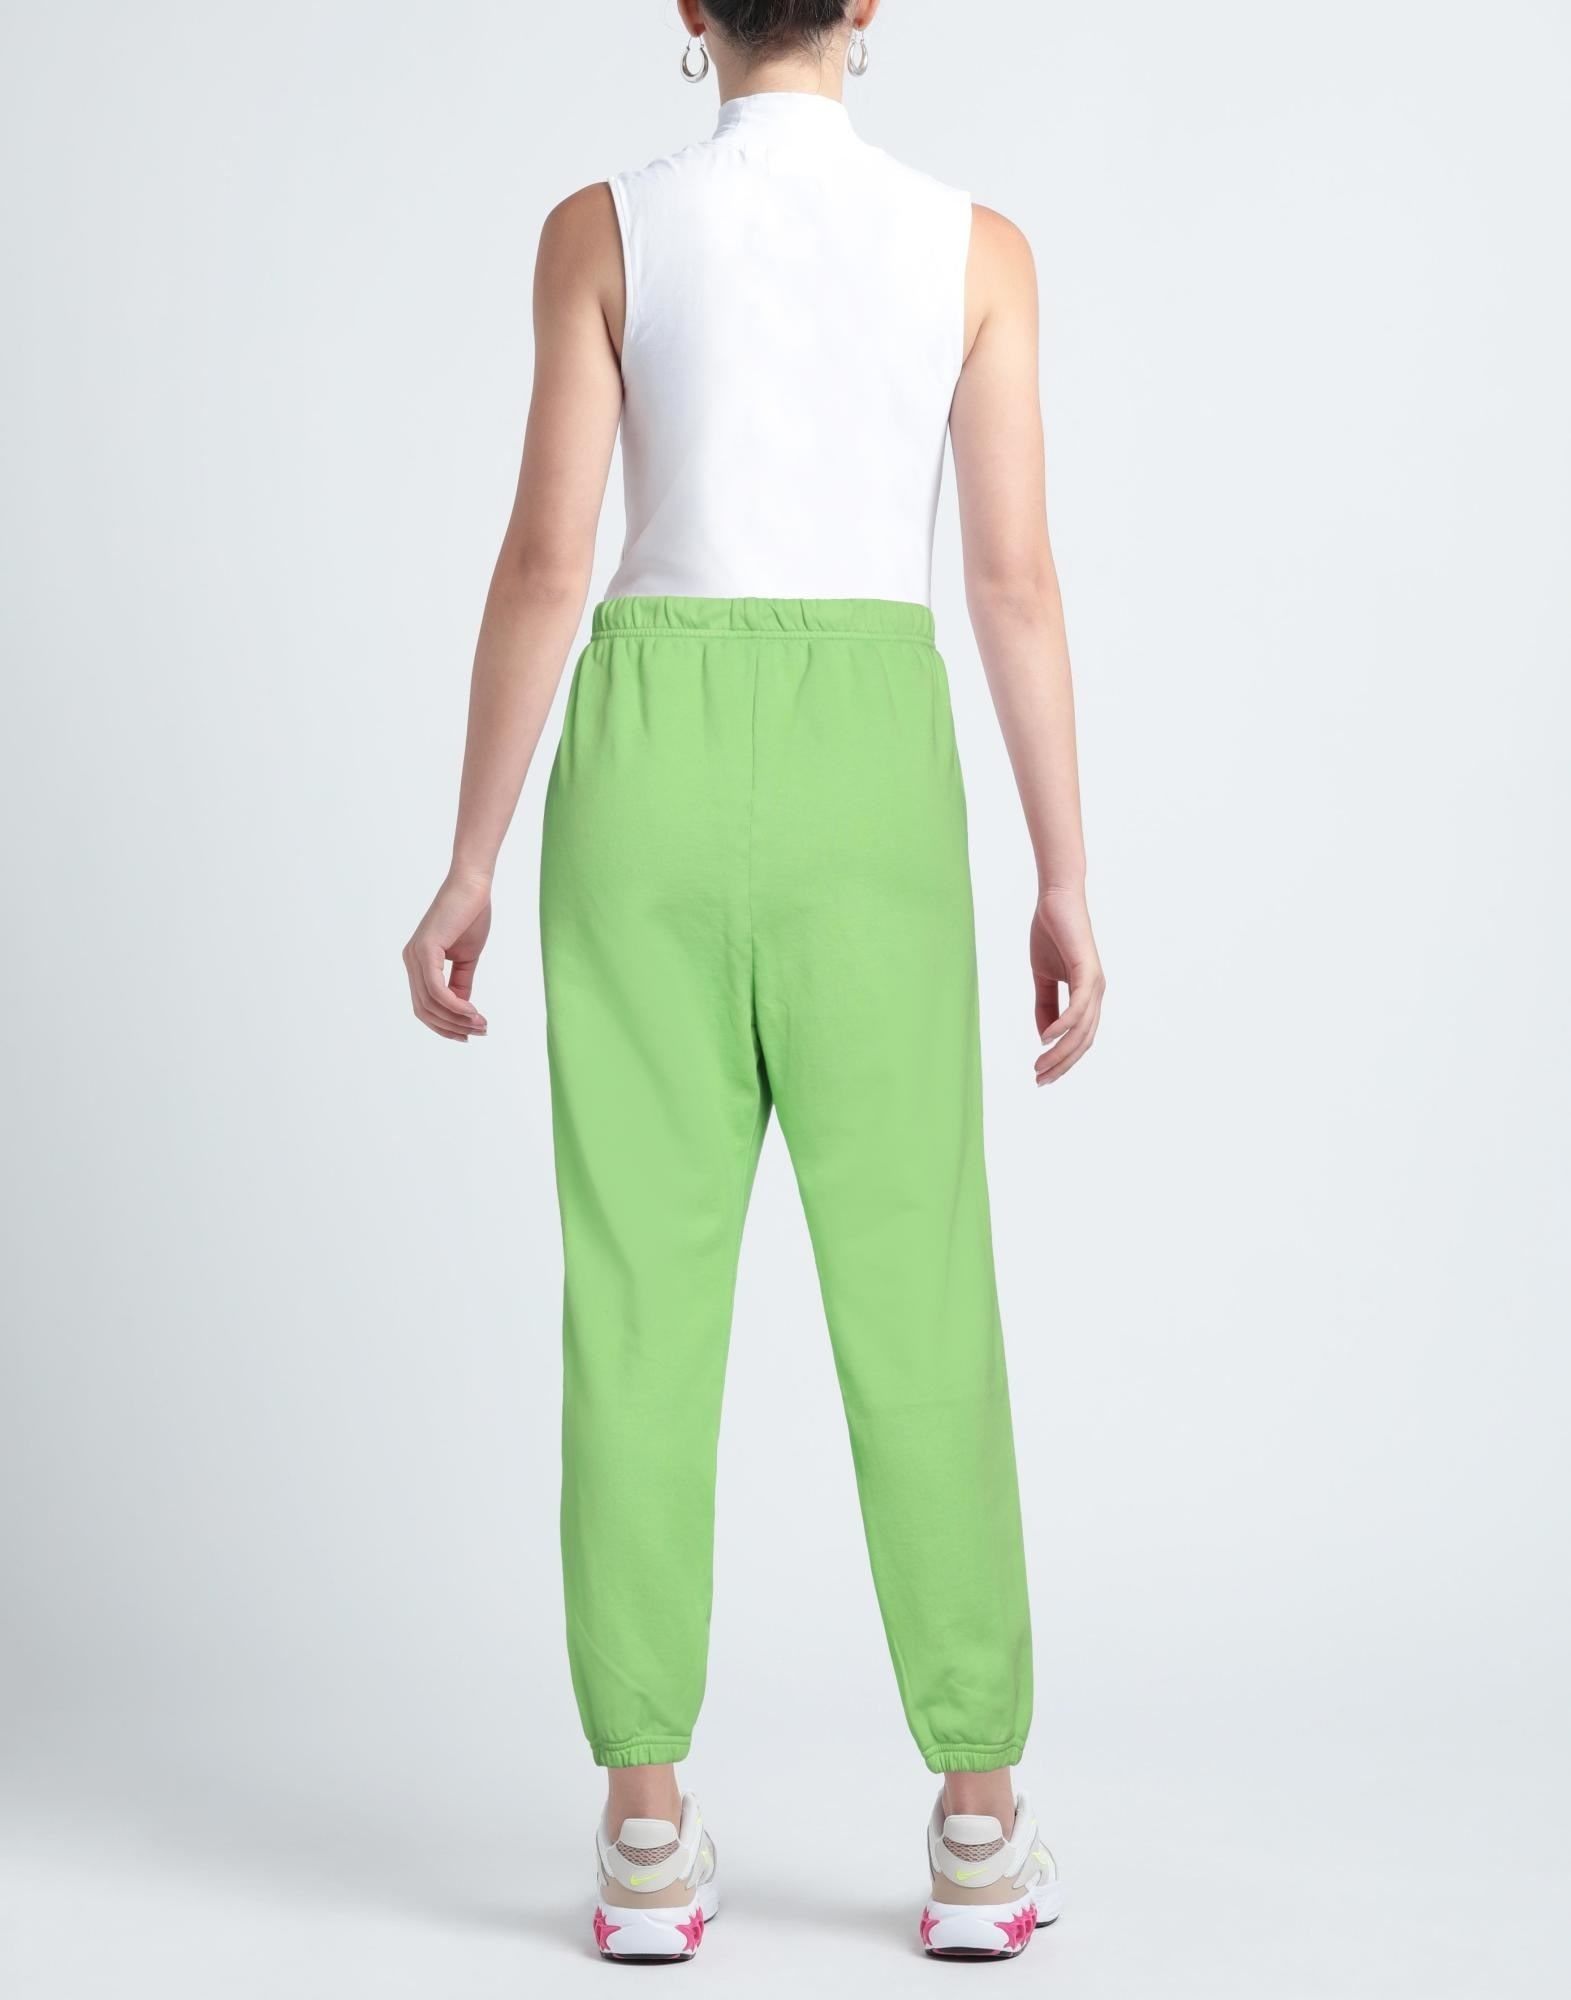 Green Women's Casual Pants - 3